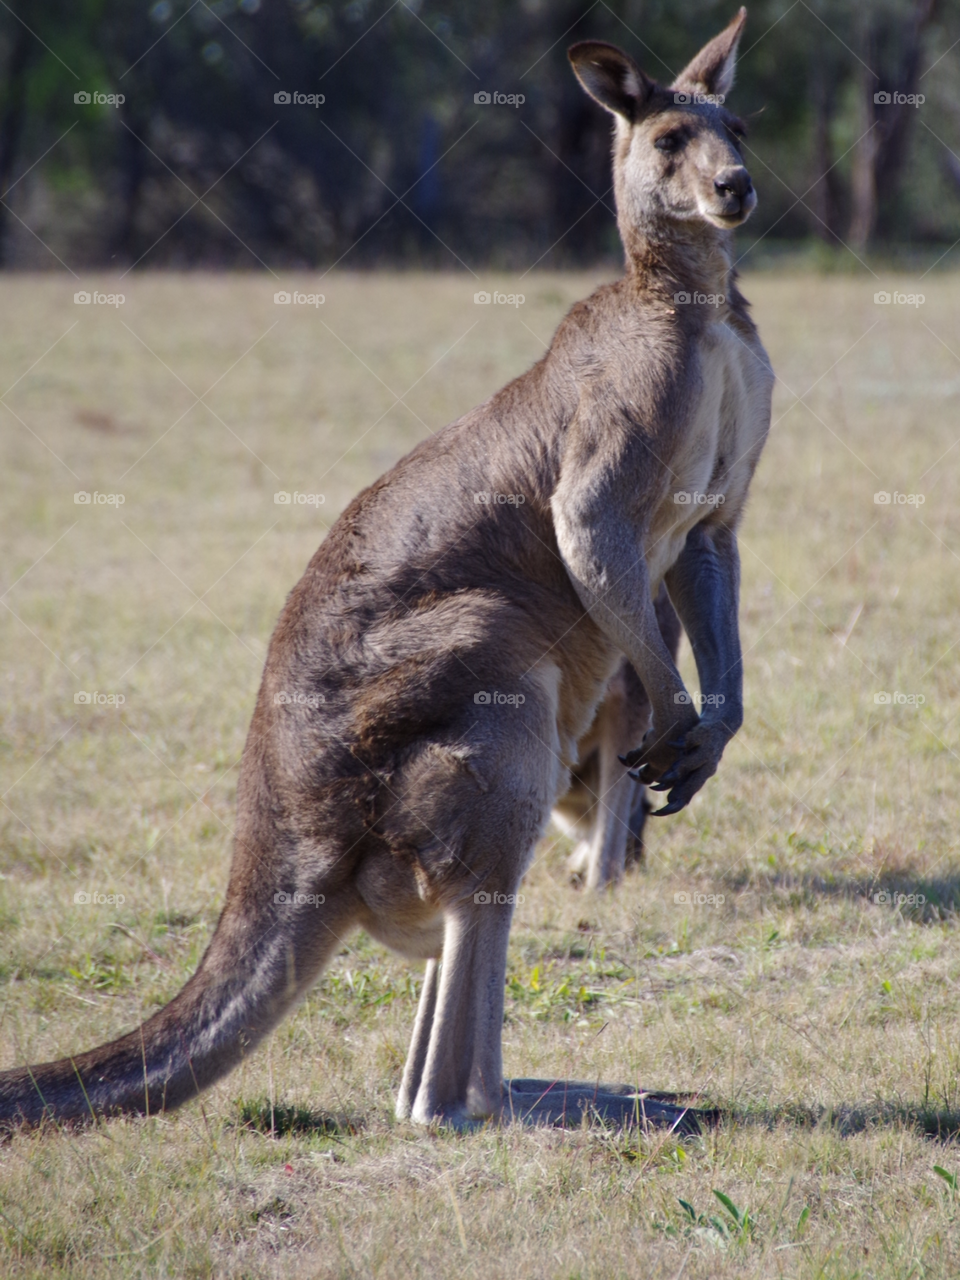 Side view of kangaroo at grassy land